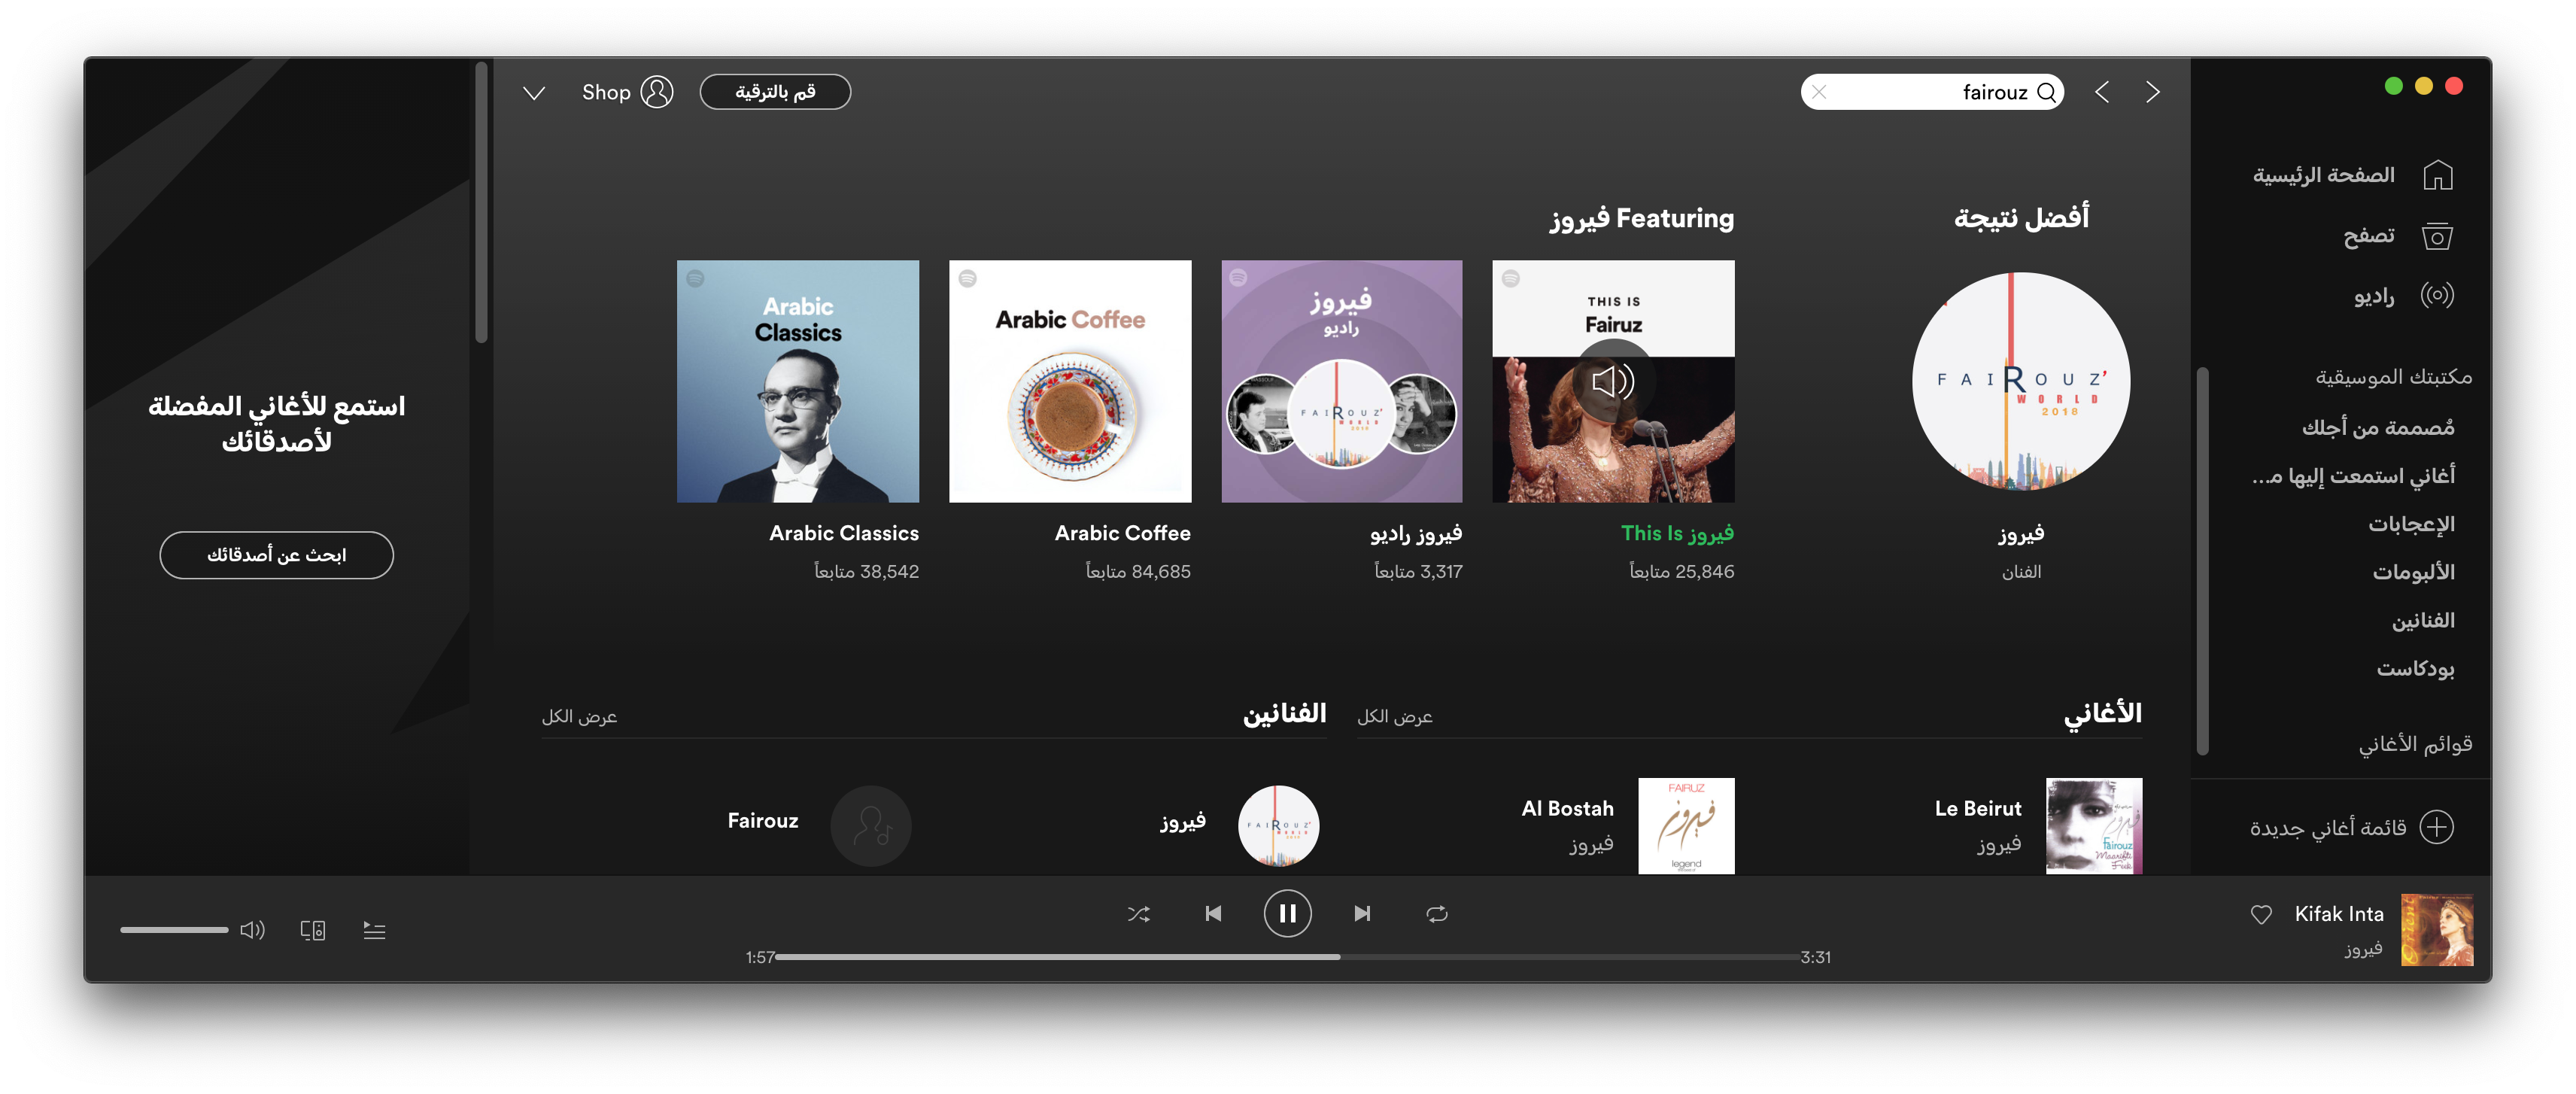 Circular Arabic used by Spotify 2